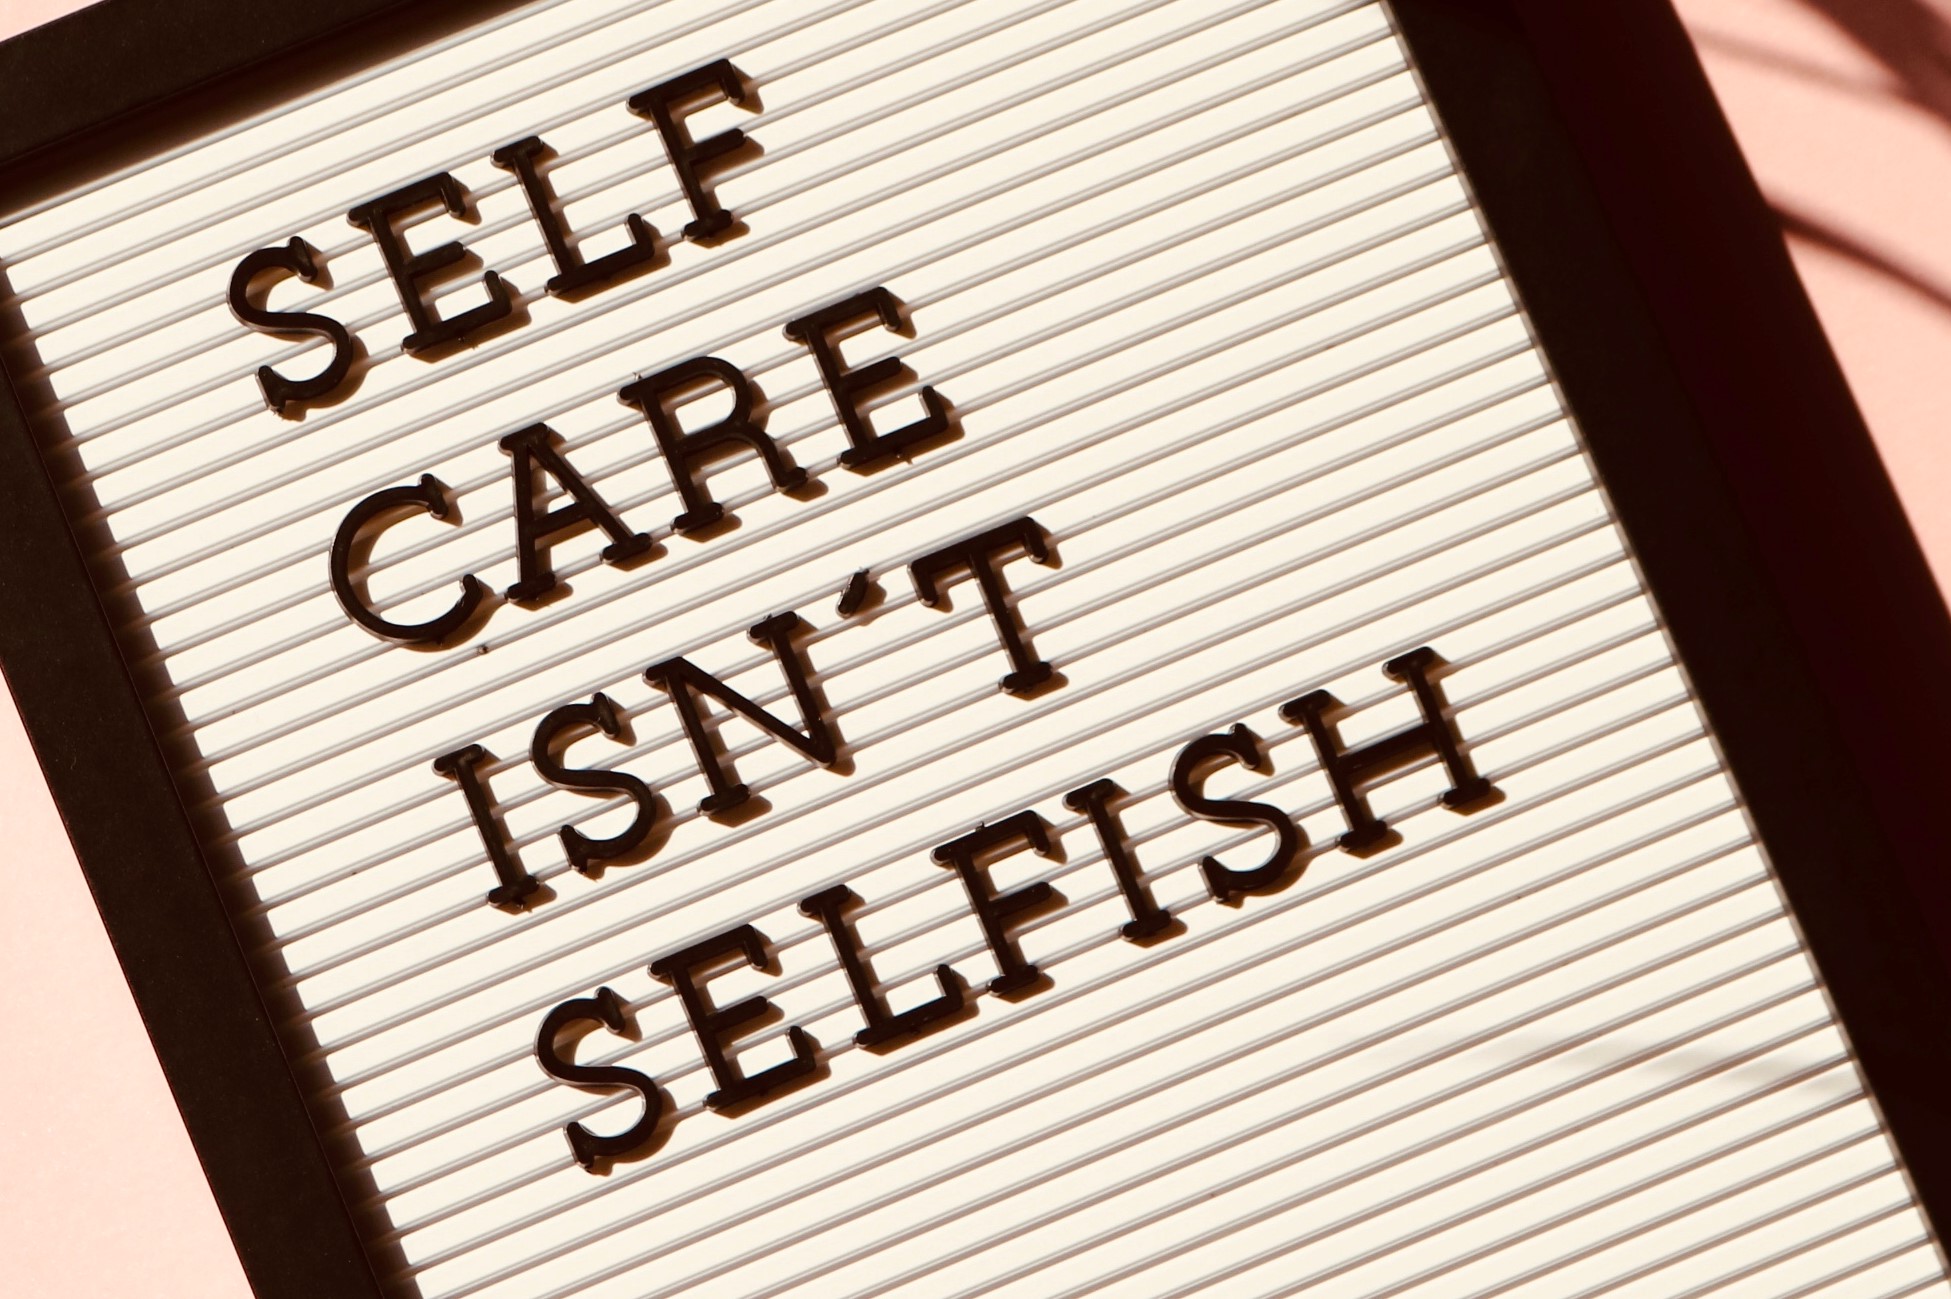 self-care-isn't selfish